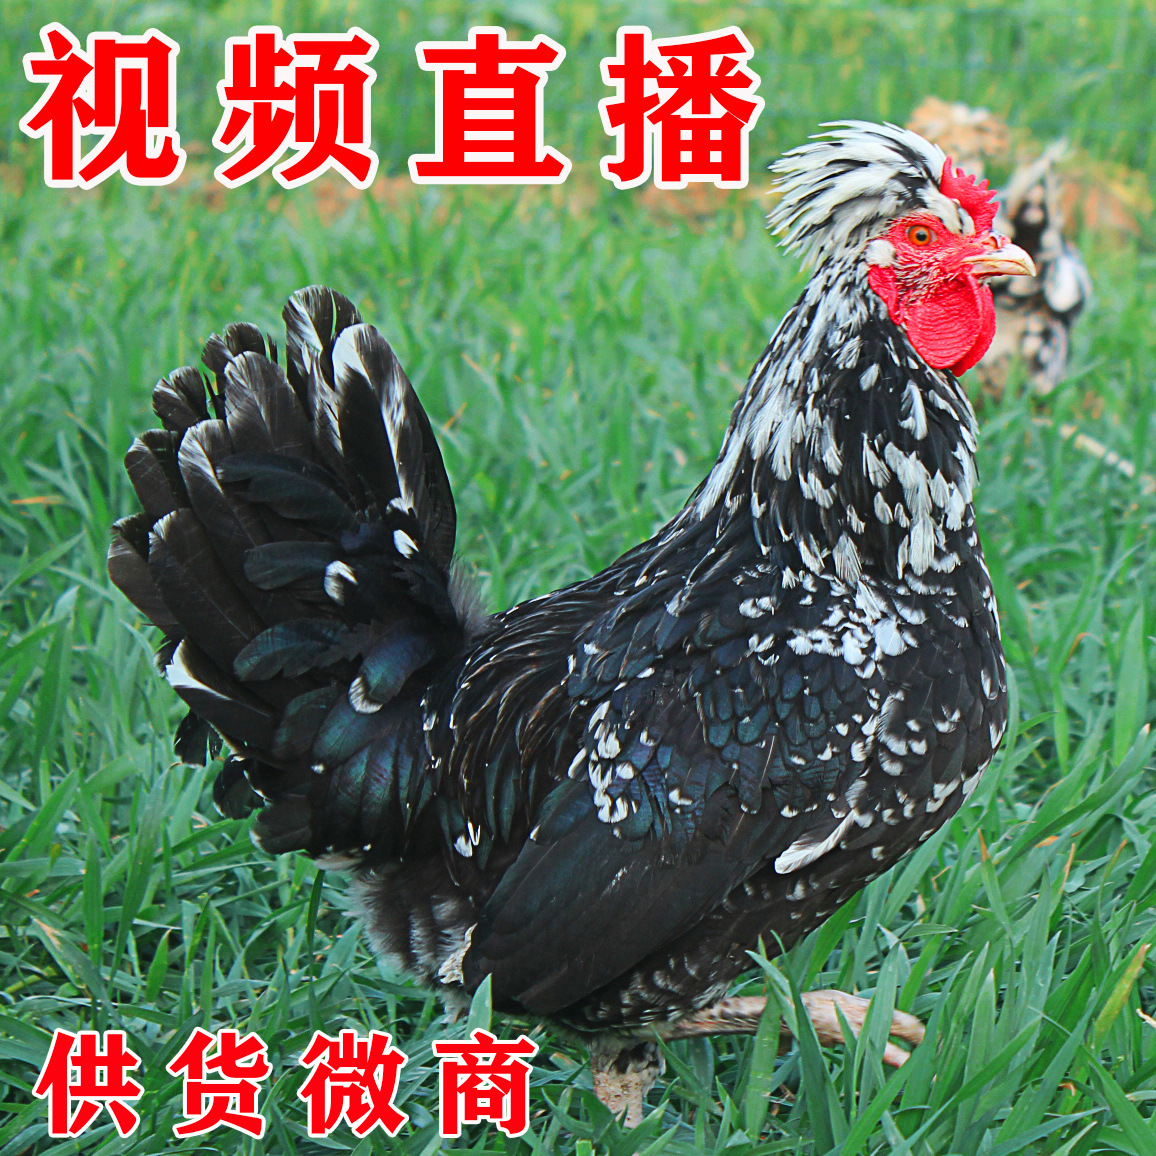 【良心食材】贵妃鸡贵妇鸡野鸡活体发货2-3斤微商产品一件代发|ru